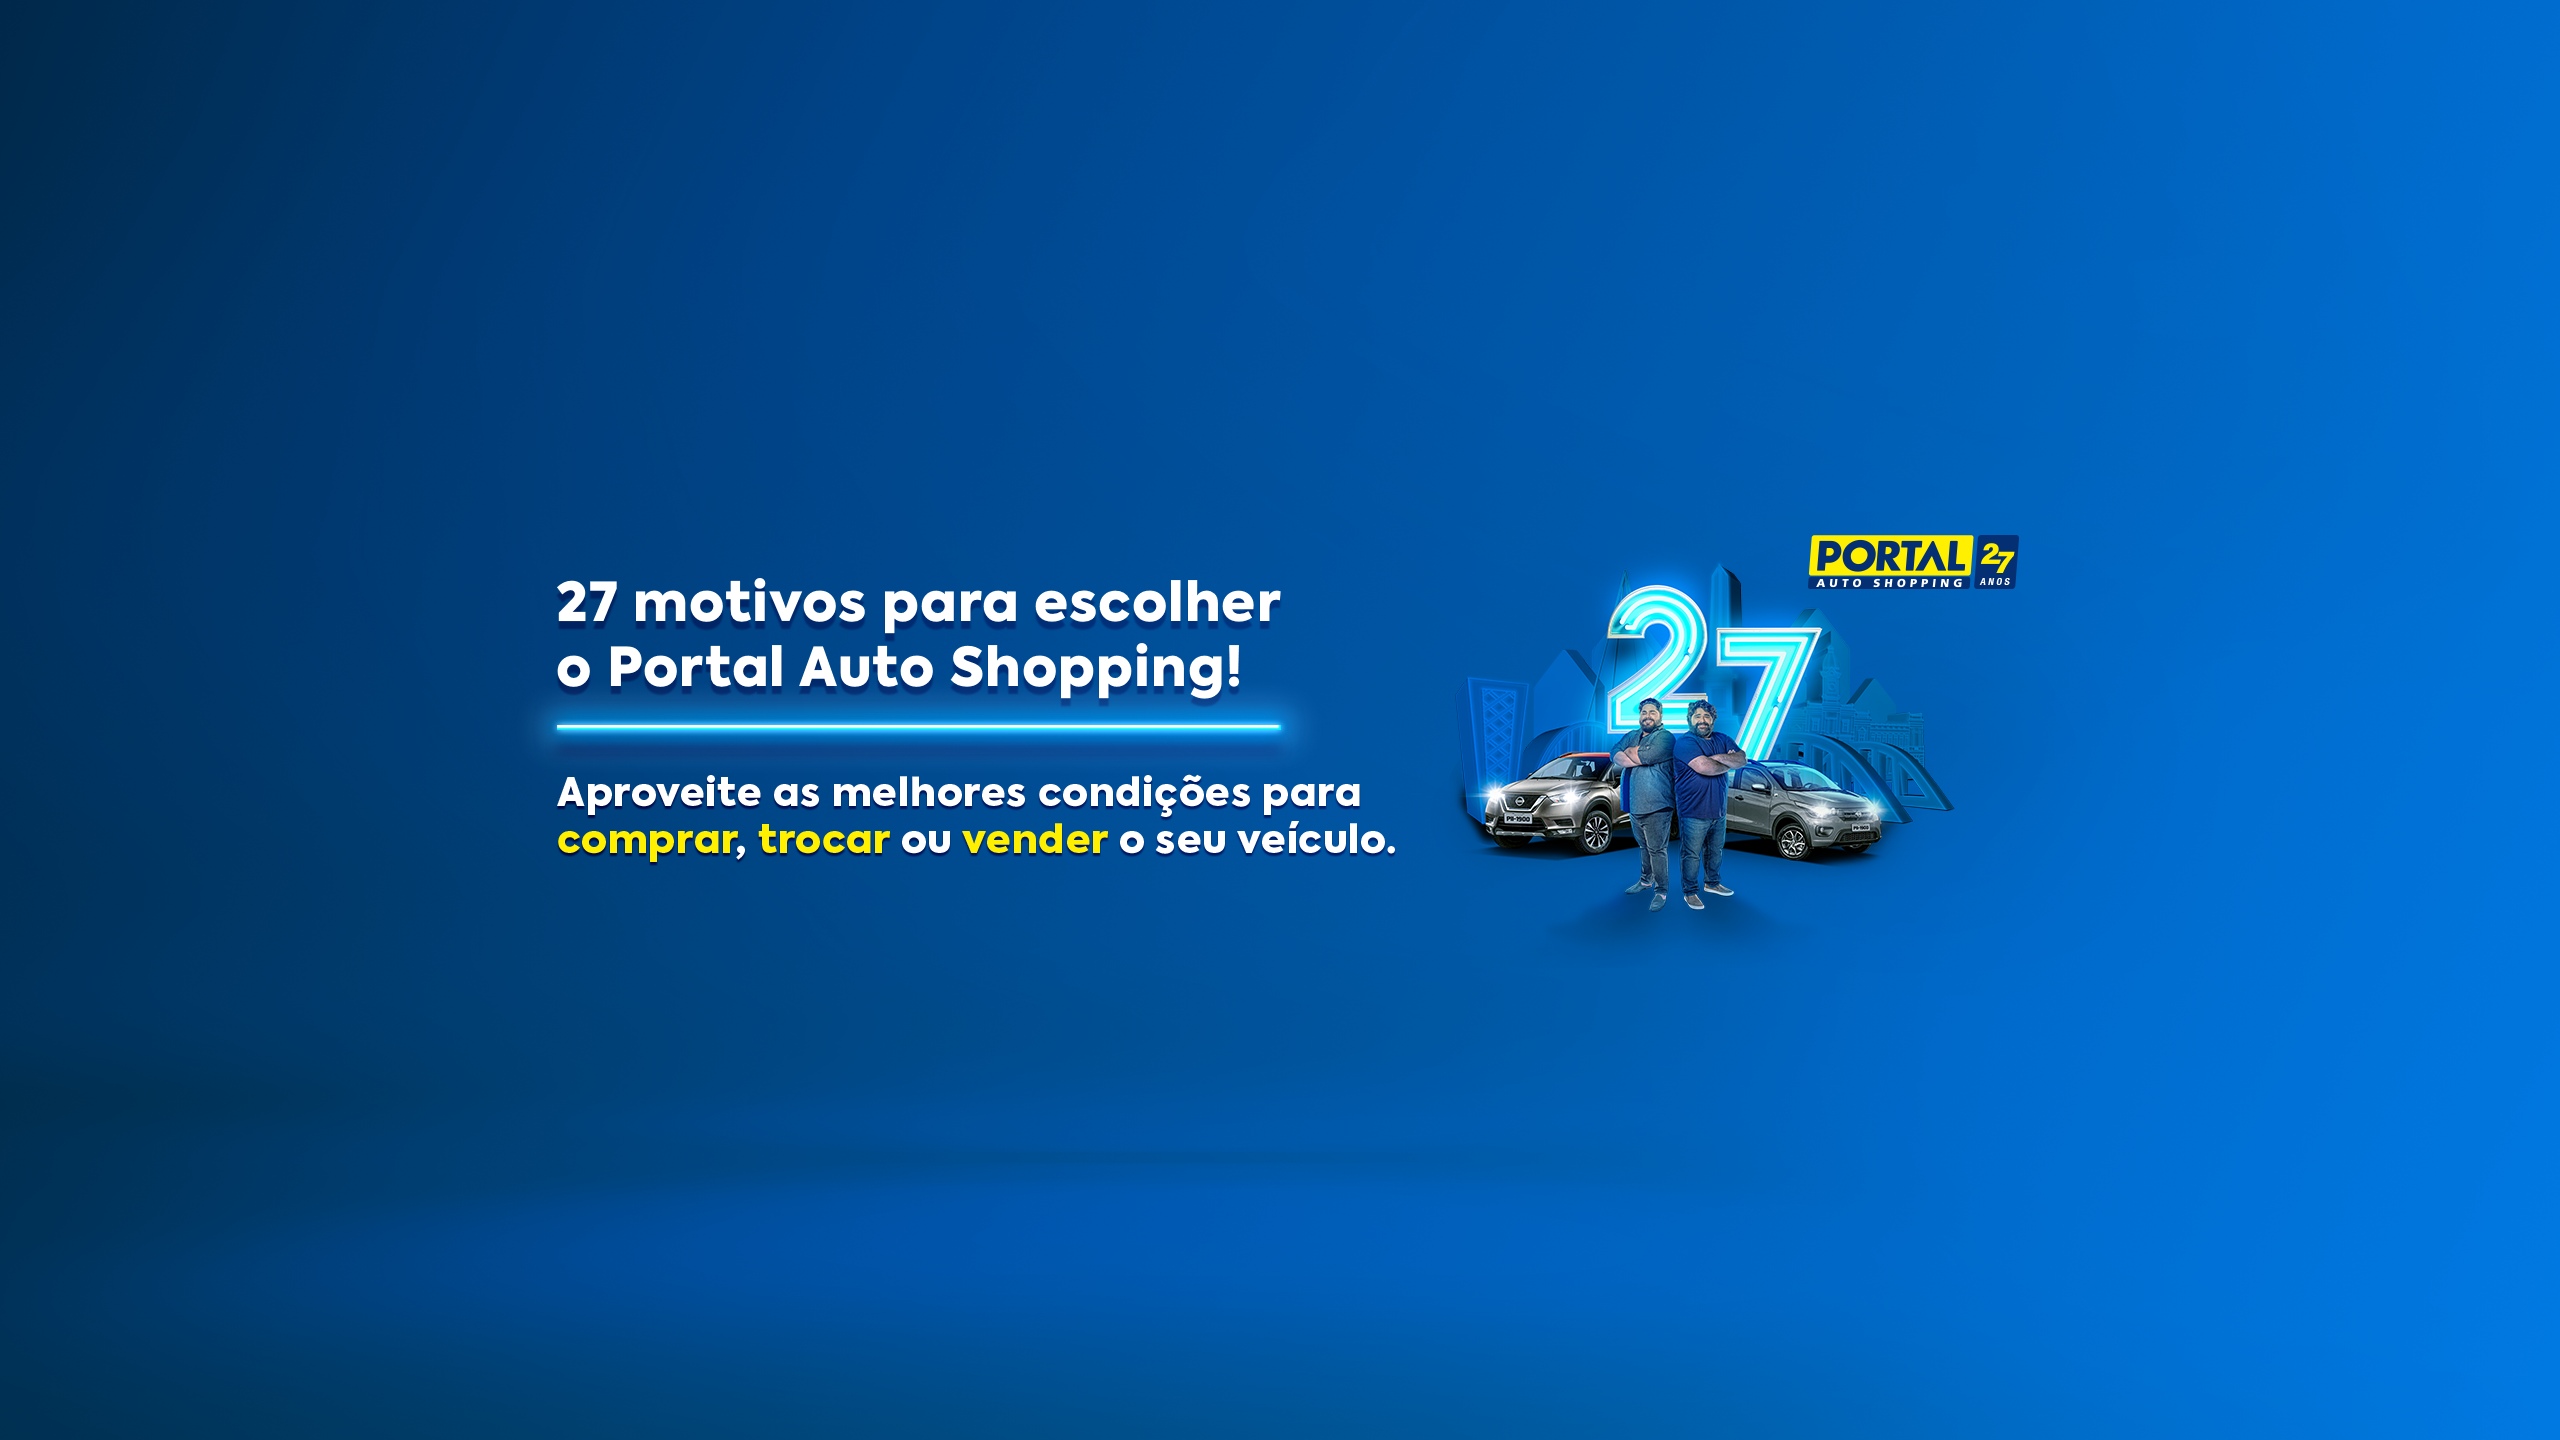 Aniversário do Portal Auto Shopping. Conheça nossa história